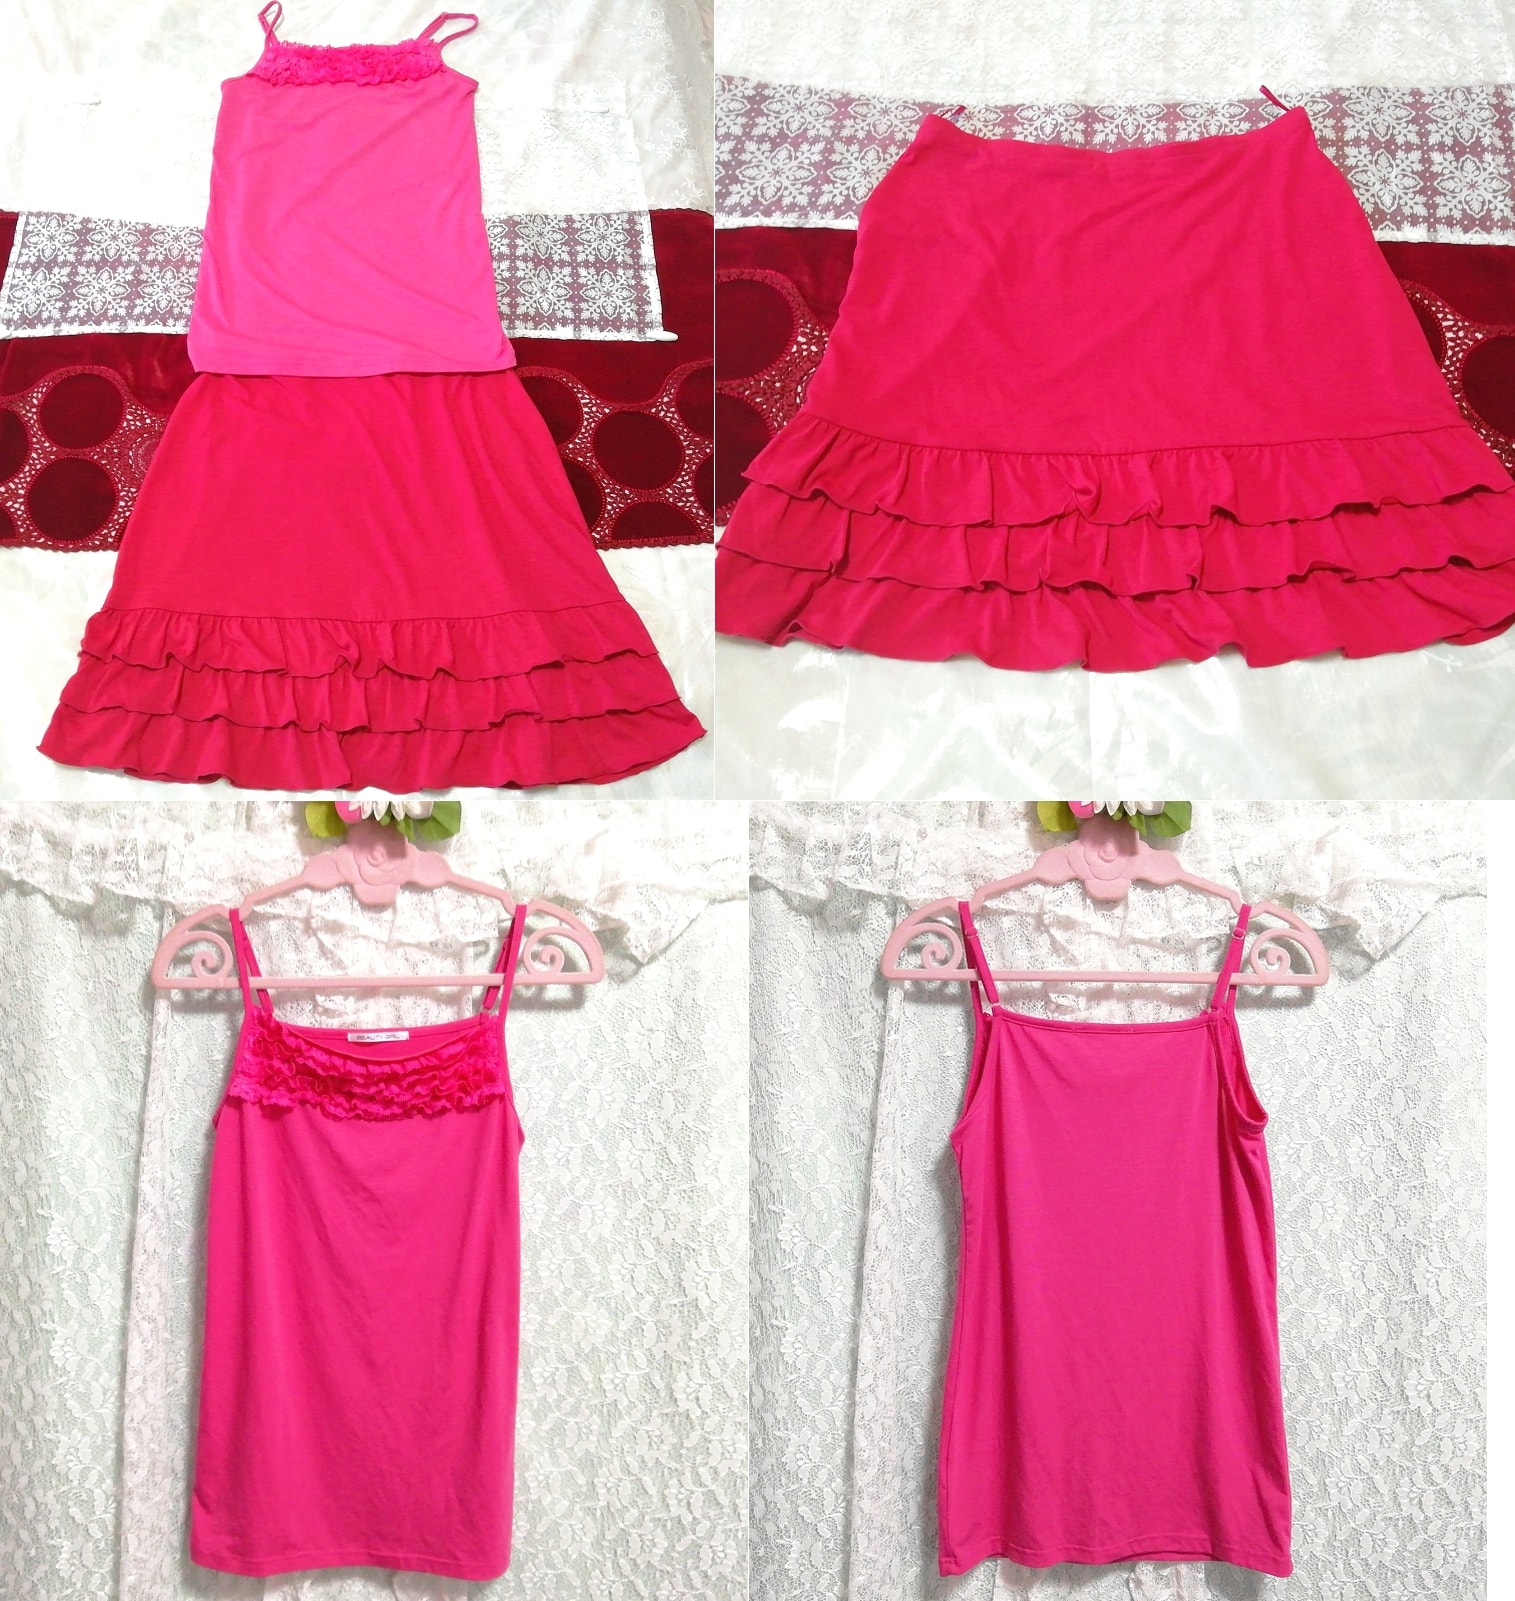 Camisón camisola negligee de encaje rosa minifalda con volante rojo 2P, moda, moda para damas, ropa de dormir, pijama